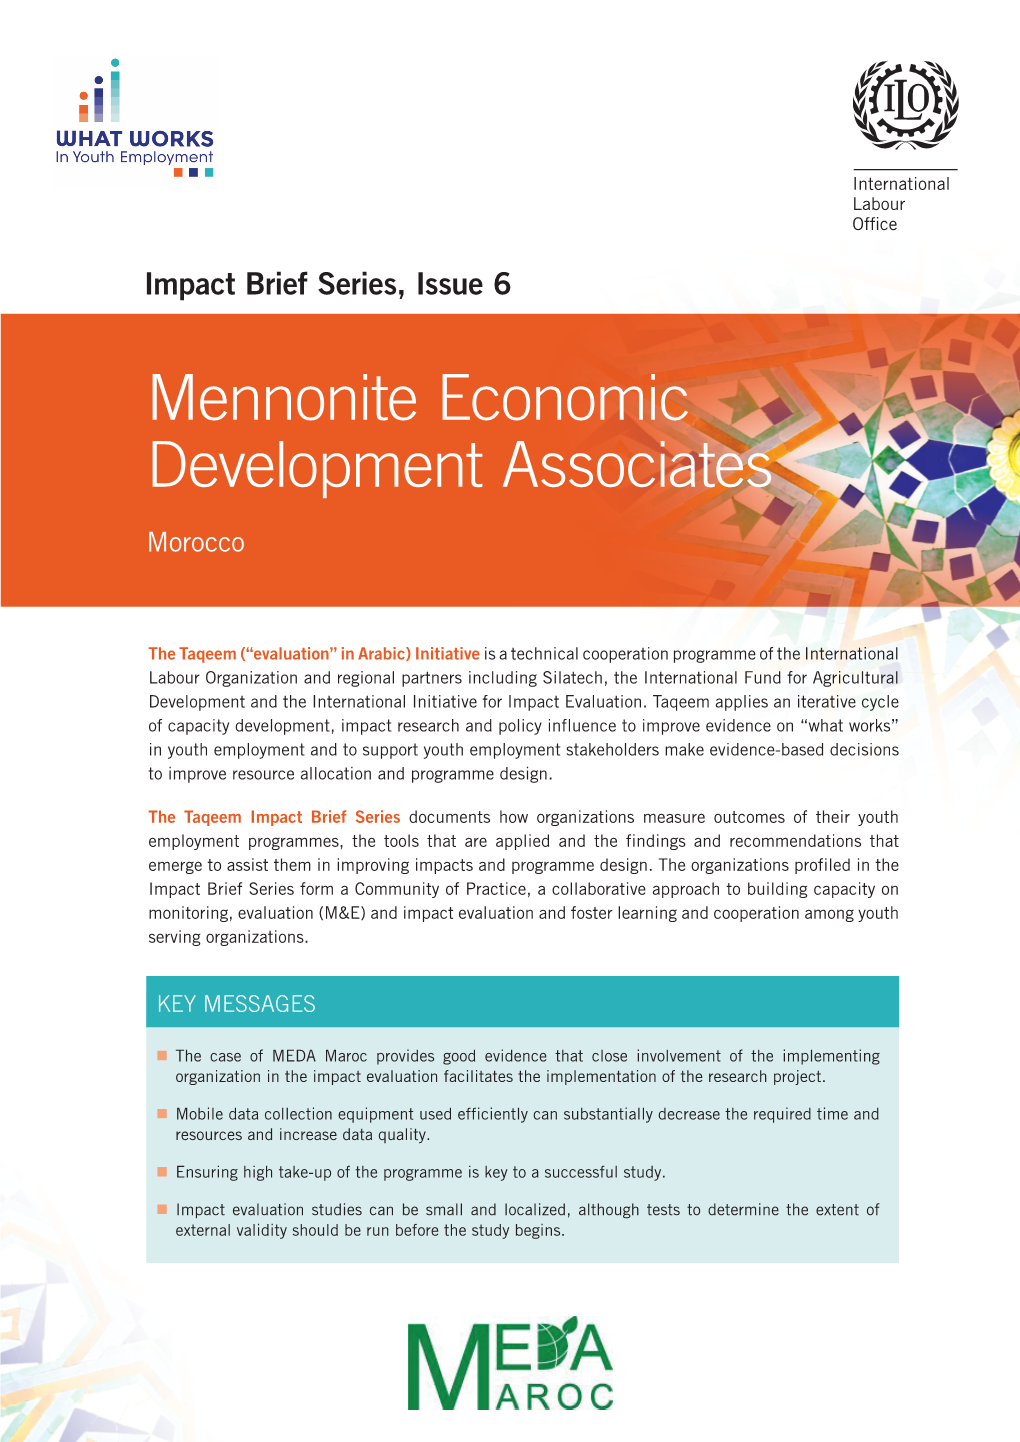 Mennonite Economic Development Associates